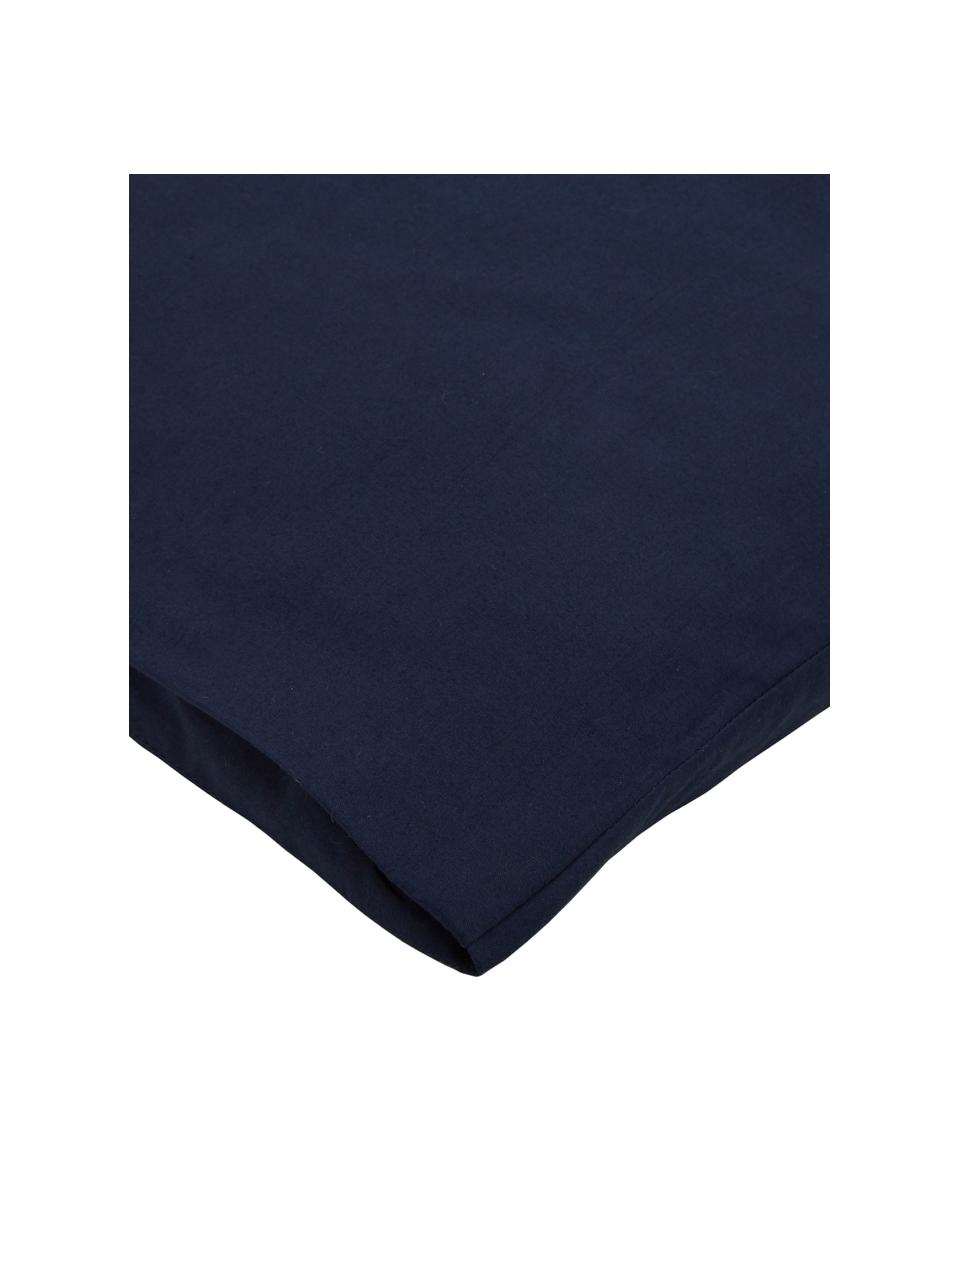 Taies d'oreiller en percale de coton bleu foncé Elsie, 2 pièces, 50 x 70 cm, Bleu foncé, larg. 50 x long. 70 cm